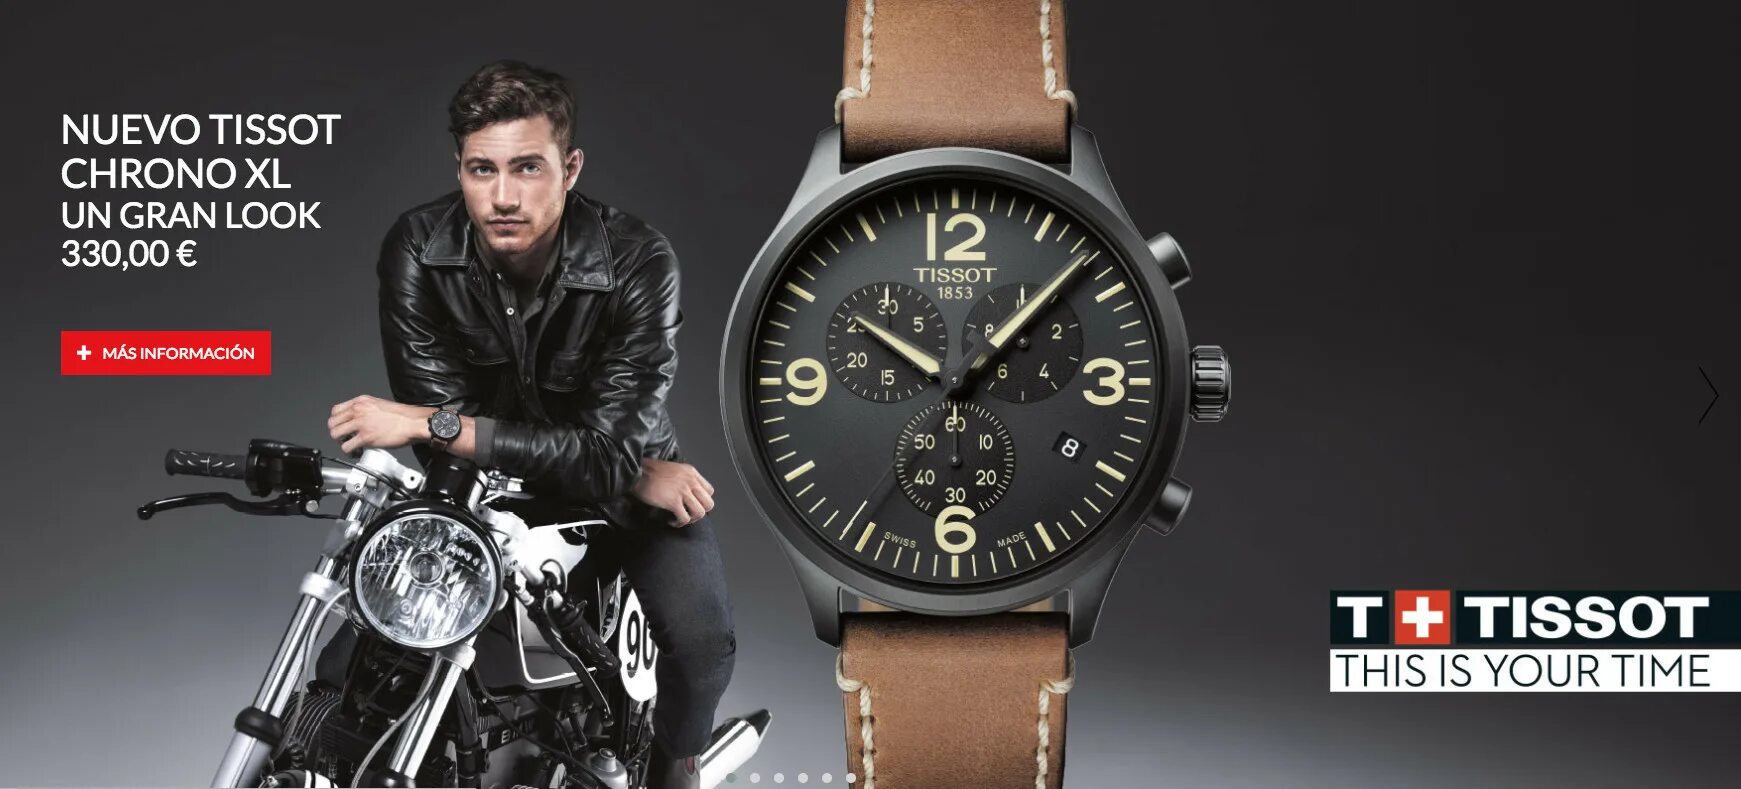 Famous watches. Tissot 2017. Soat Tissot. Реклама тиссот. Часы тиссот мужские.